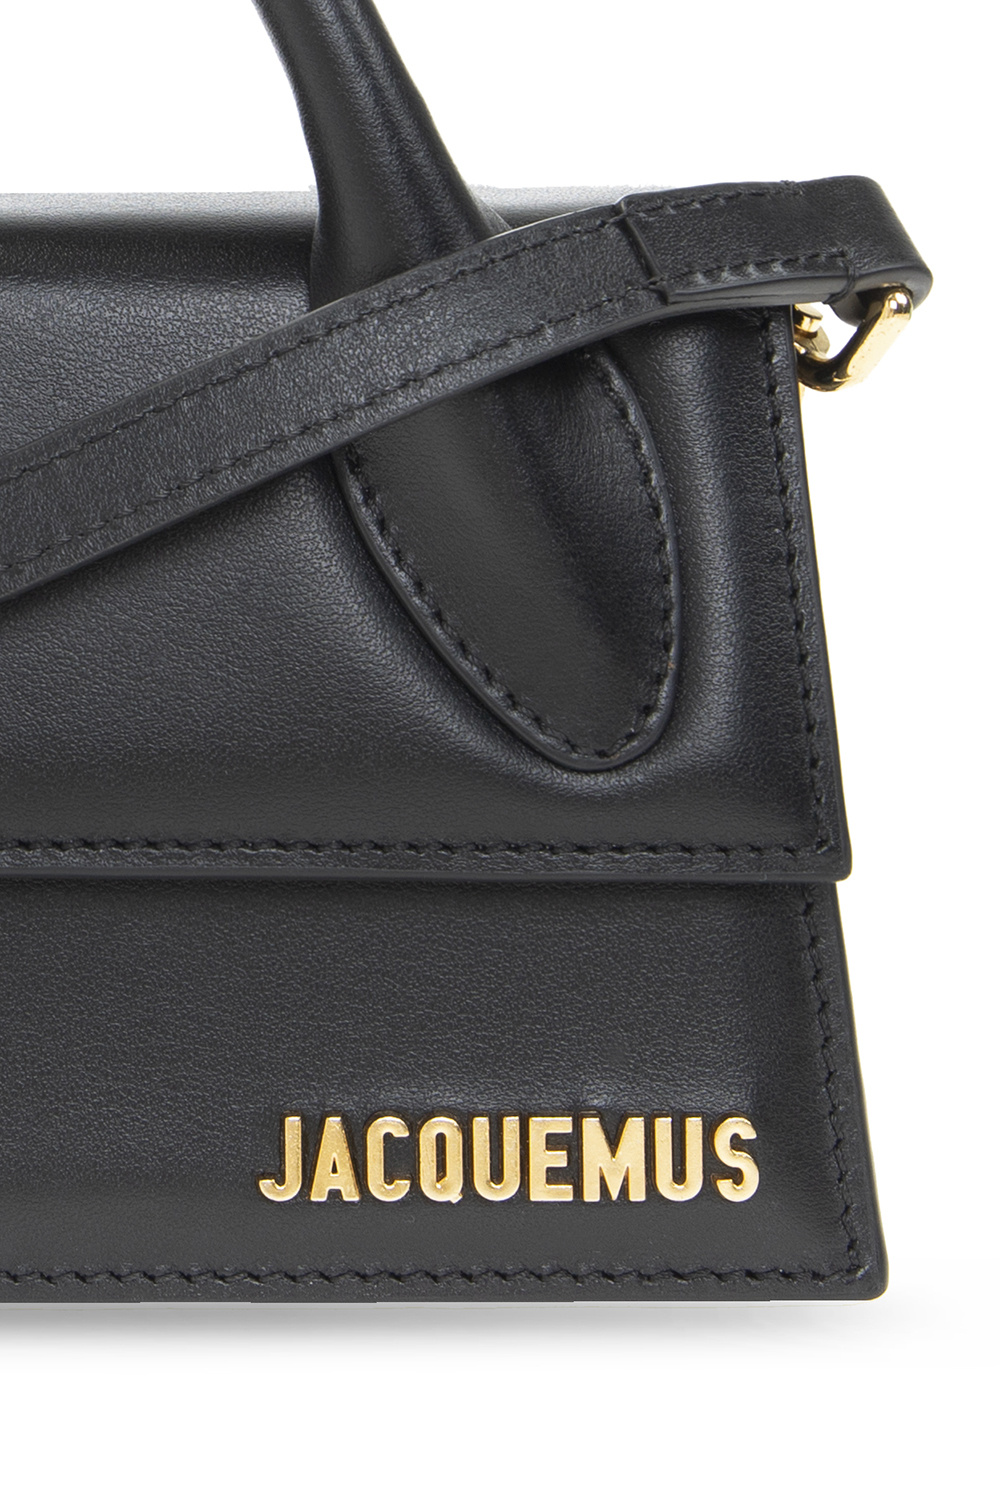 Jacquemus Le Chiquito Long Black Leather Top Handle Bag, Bag, Black